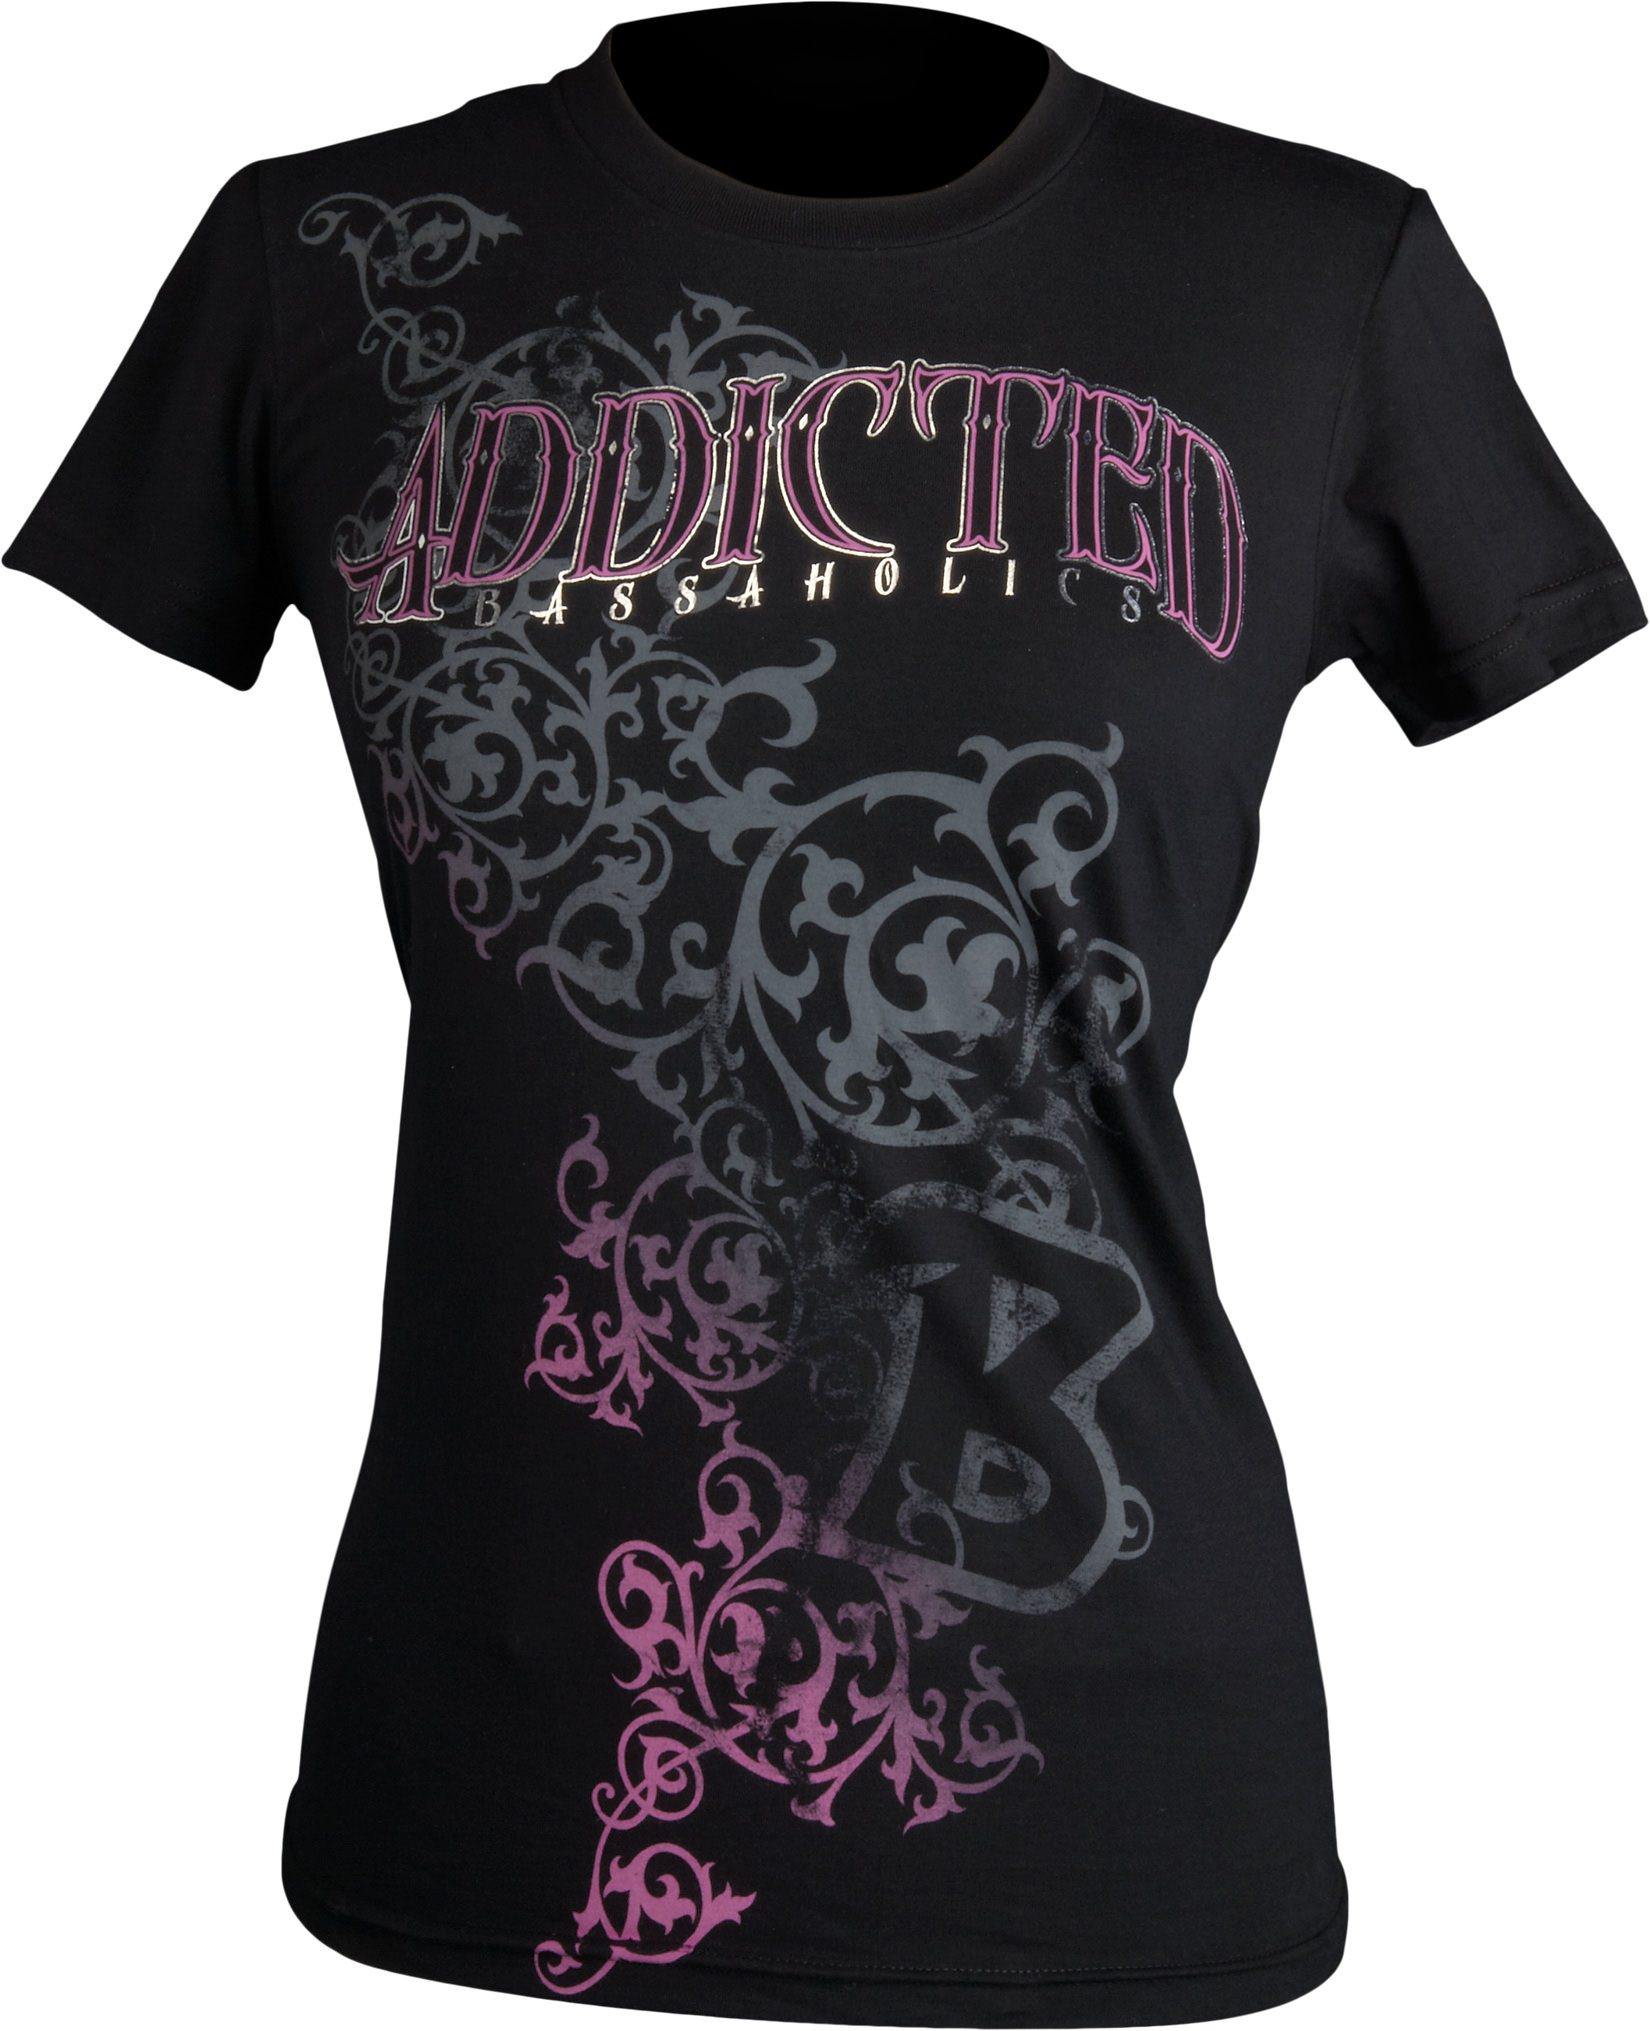 http://www.bassaholics.com/cdn/shop/products/gothic-womens-fishing-shirt-black.jpg?v=1635209801